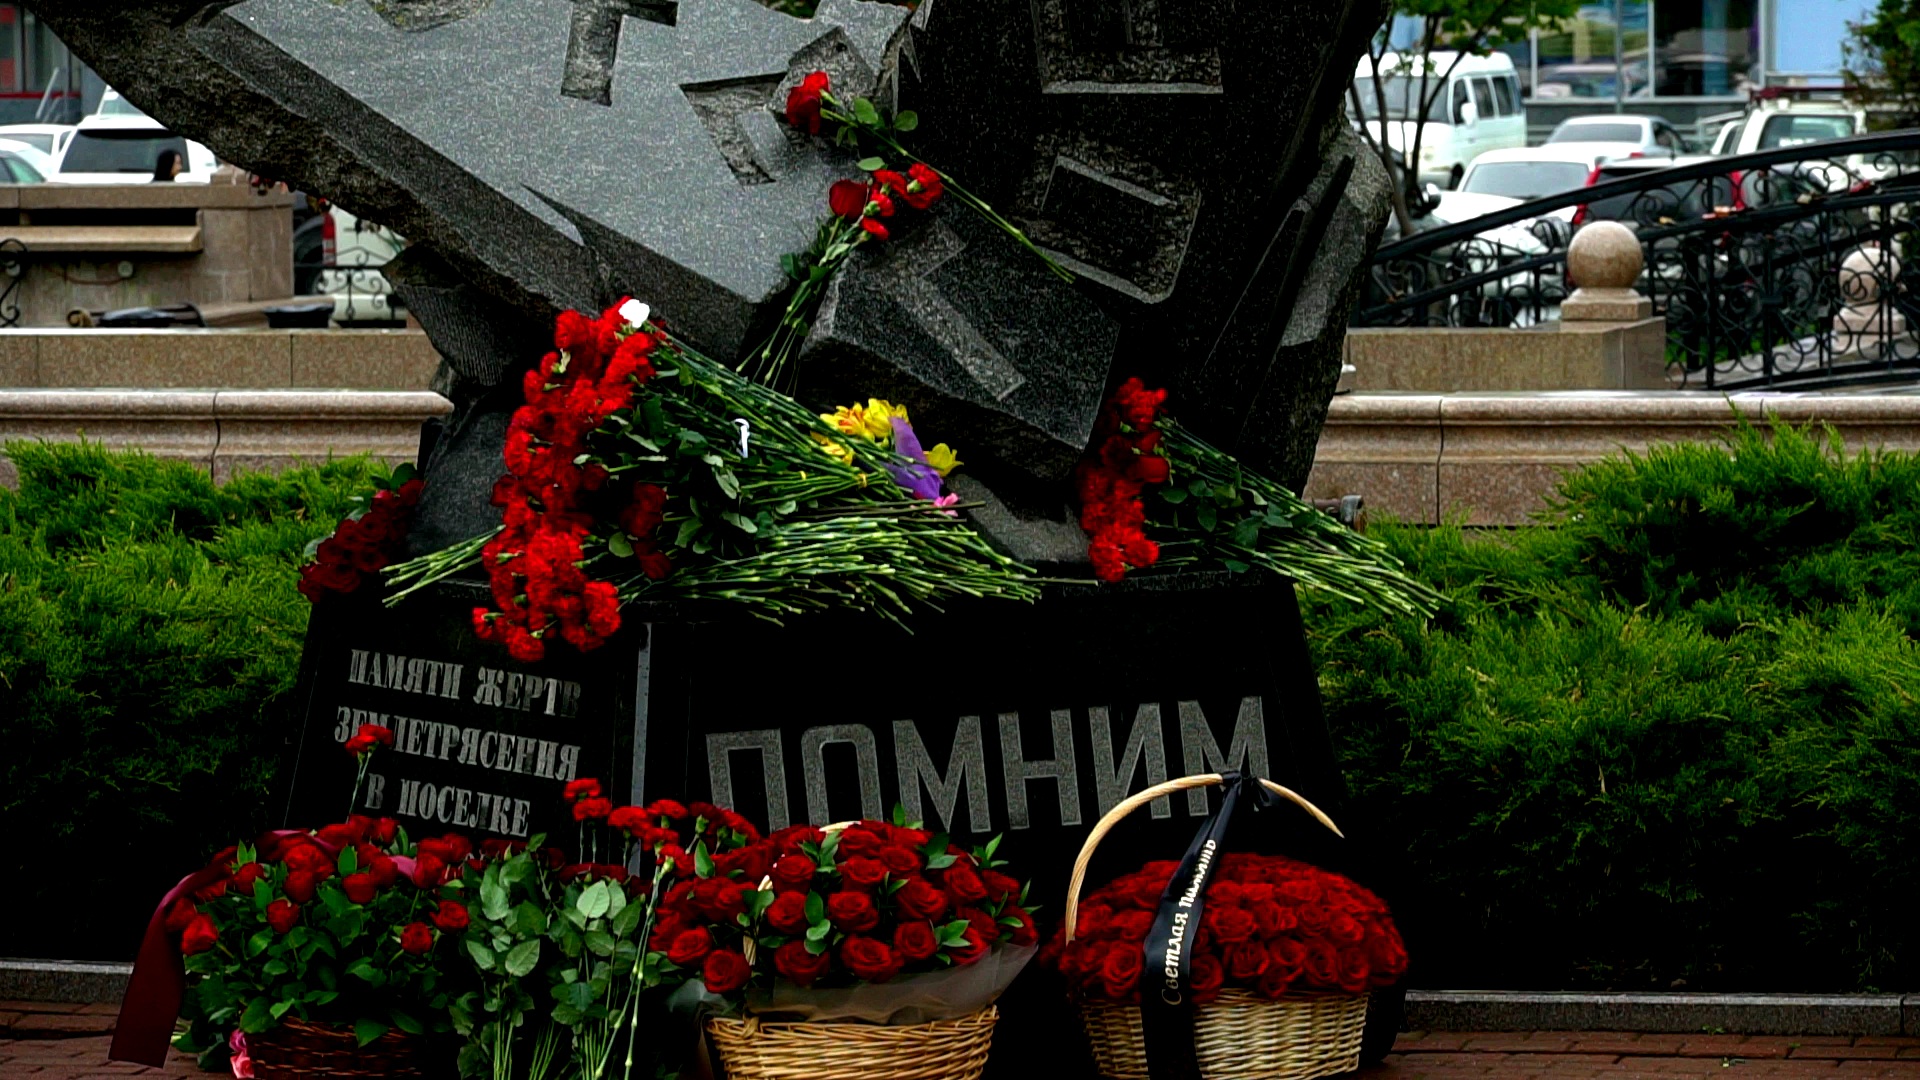 Нефтегорск 27 годовщина трагедии на Сахалине 28 мая 1995г Землетрясение Помним Скорбим